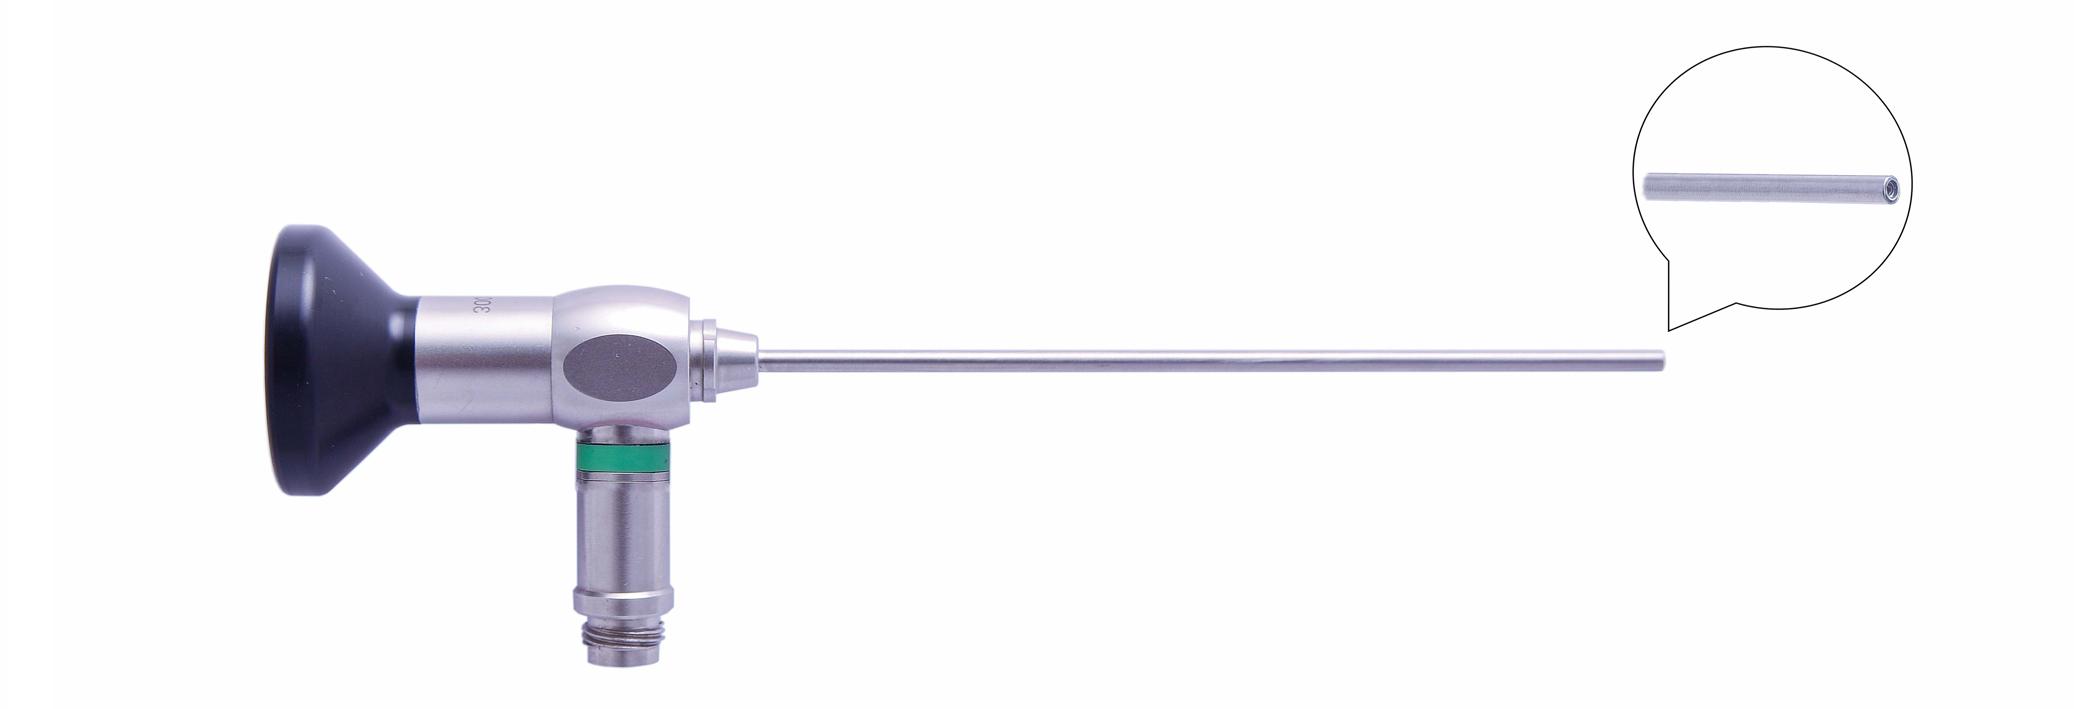 Трубка оптическая (артроскопическая, риноскопическая) ТОАР-003 диам. 2.7 мм, с углом наблюдения 0 гр. (дл. 110 мм)